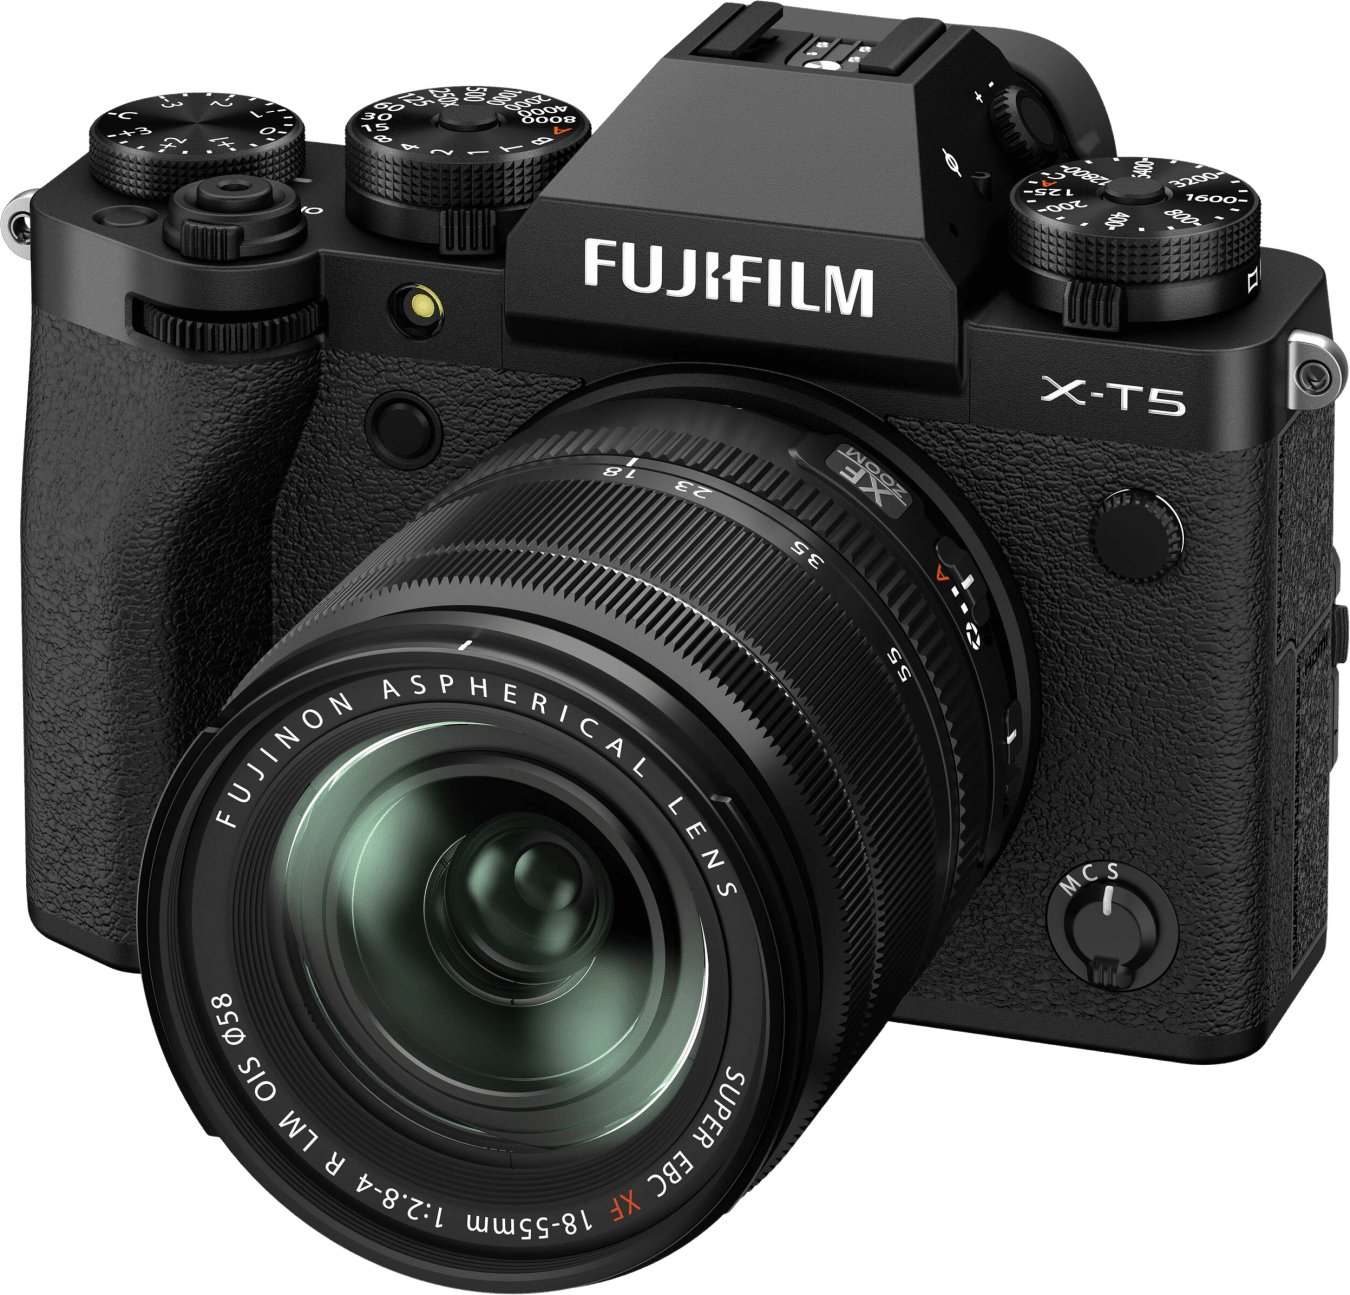 Fujifilm X-T5 + XF 18-55mm f/2,8-4,0 R LM OIS KIT von Fujifilm